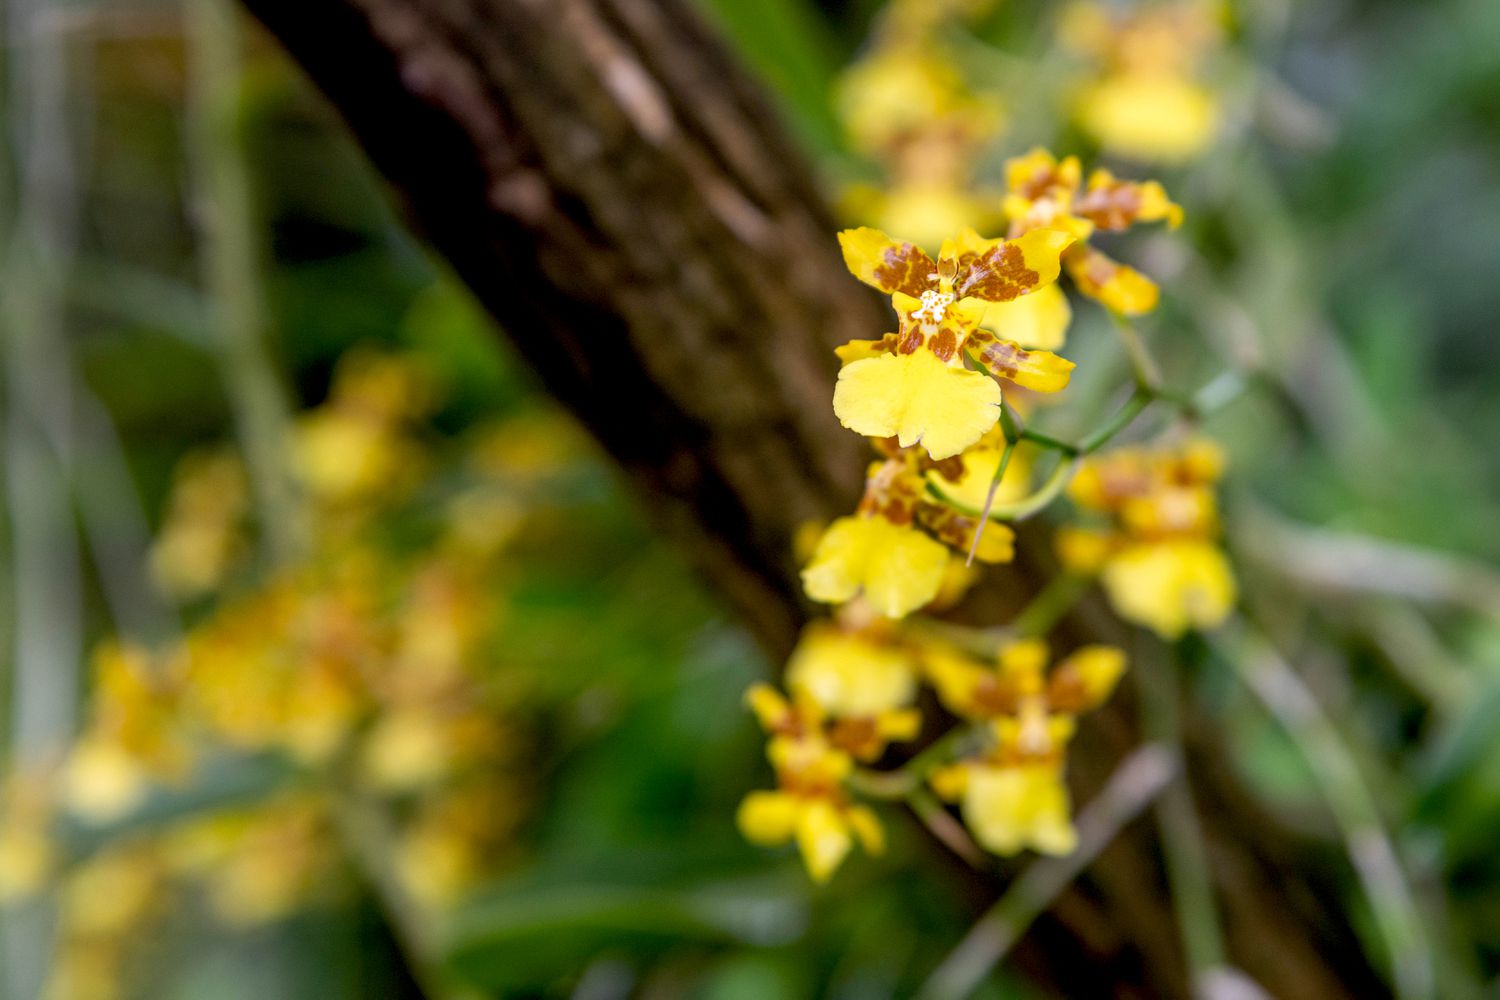 Psychopsis-Orchidee mit gelben und braunen Kelchblättern an dünnem Stiel, der am Baumstamm hängt